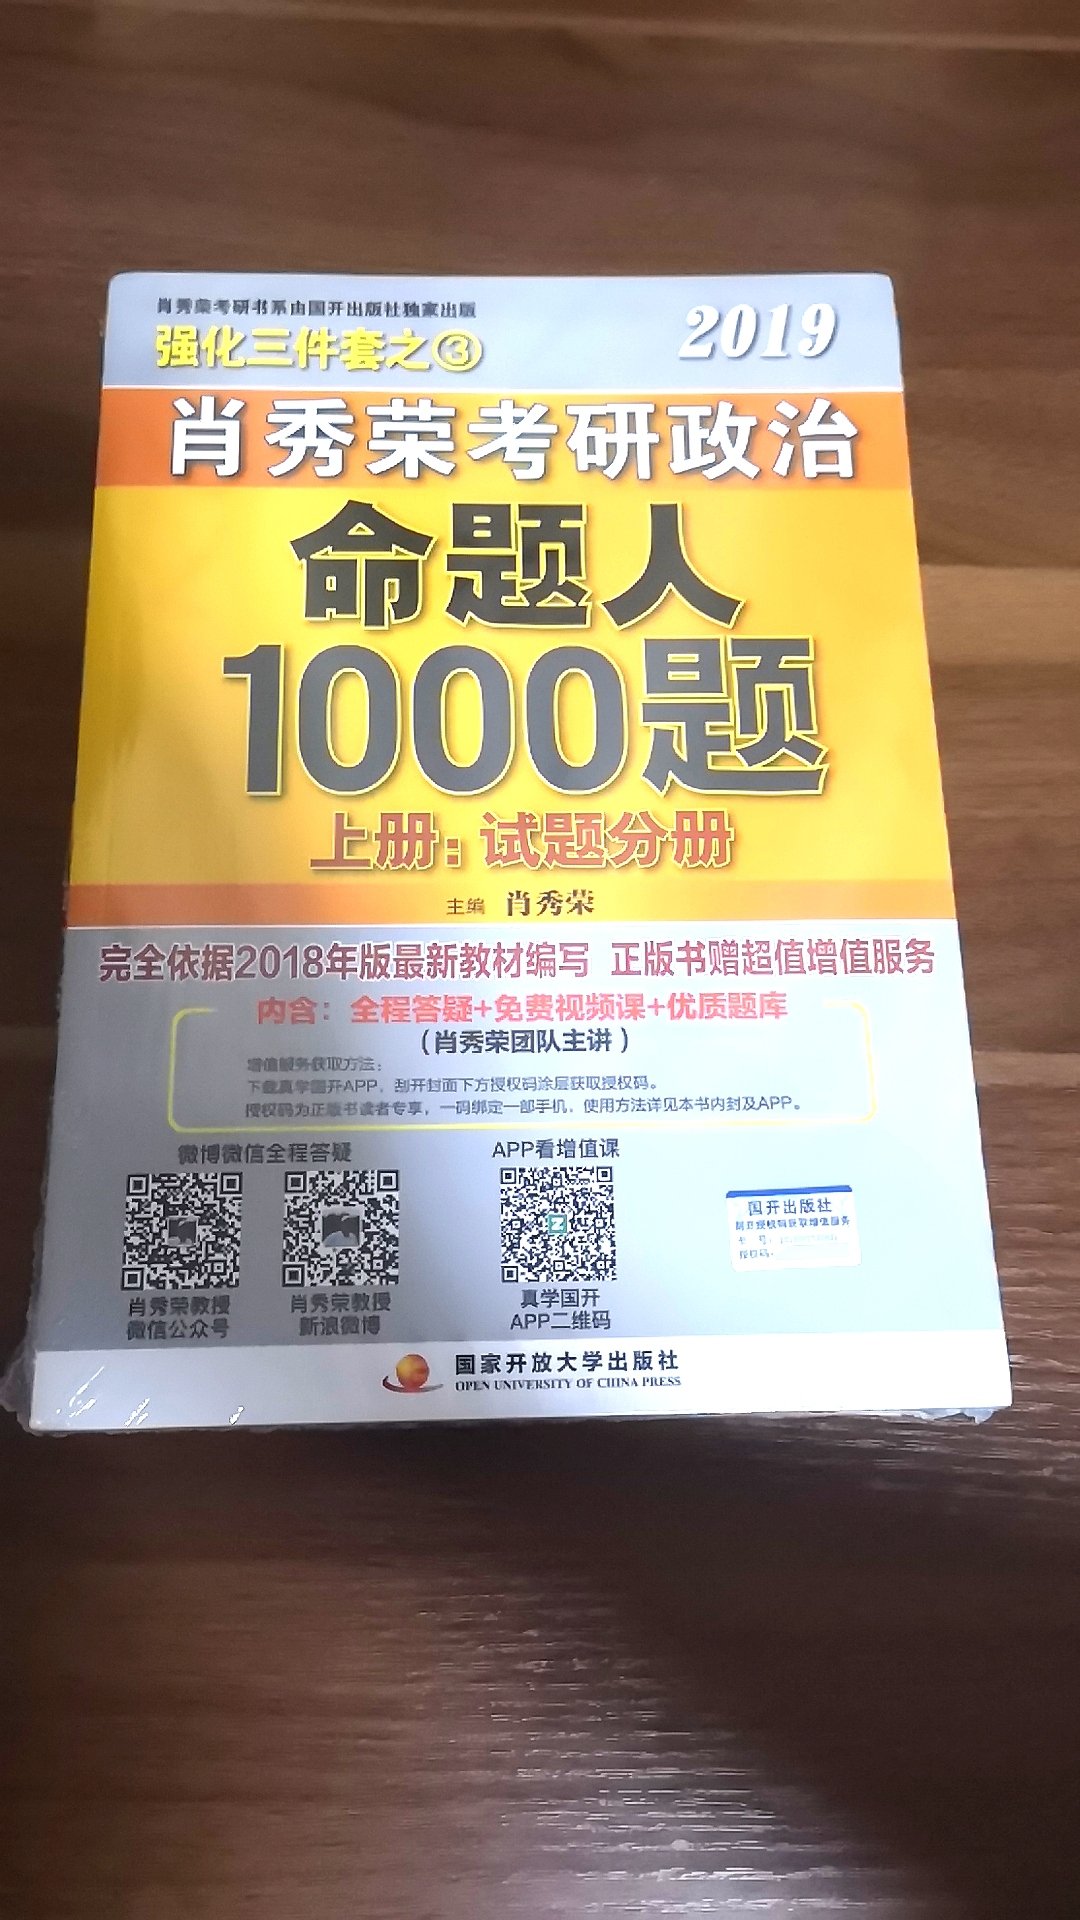 这本书非常好用，王江涛老师是个好老师。真心希望这次能成功上岸。